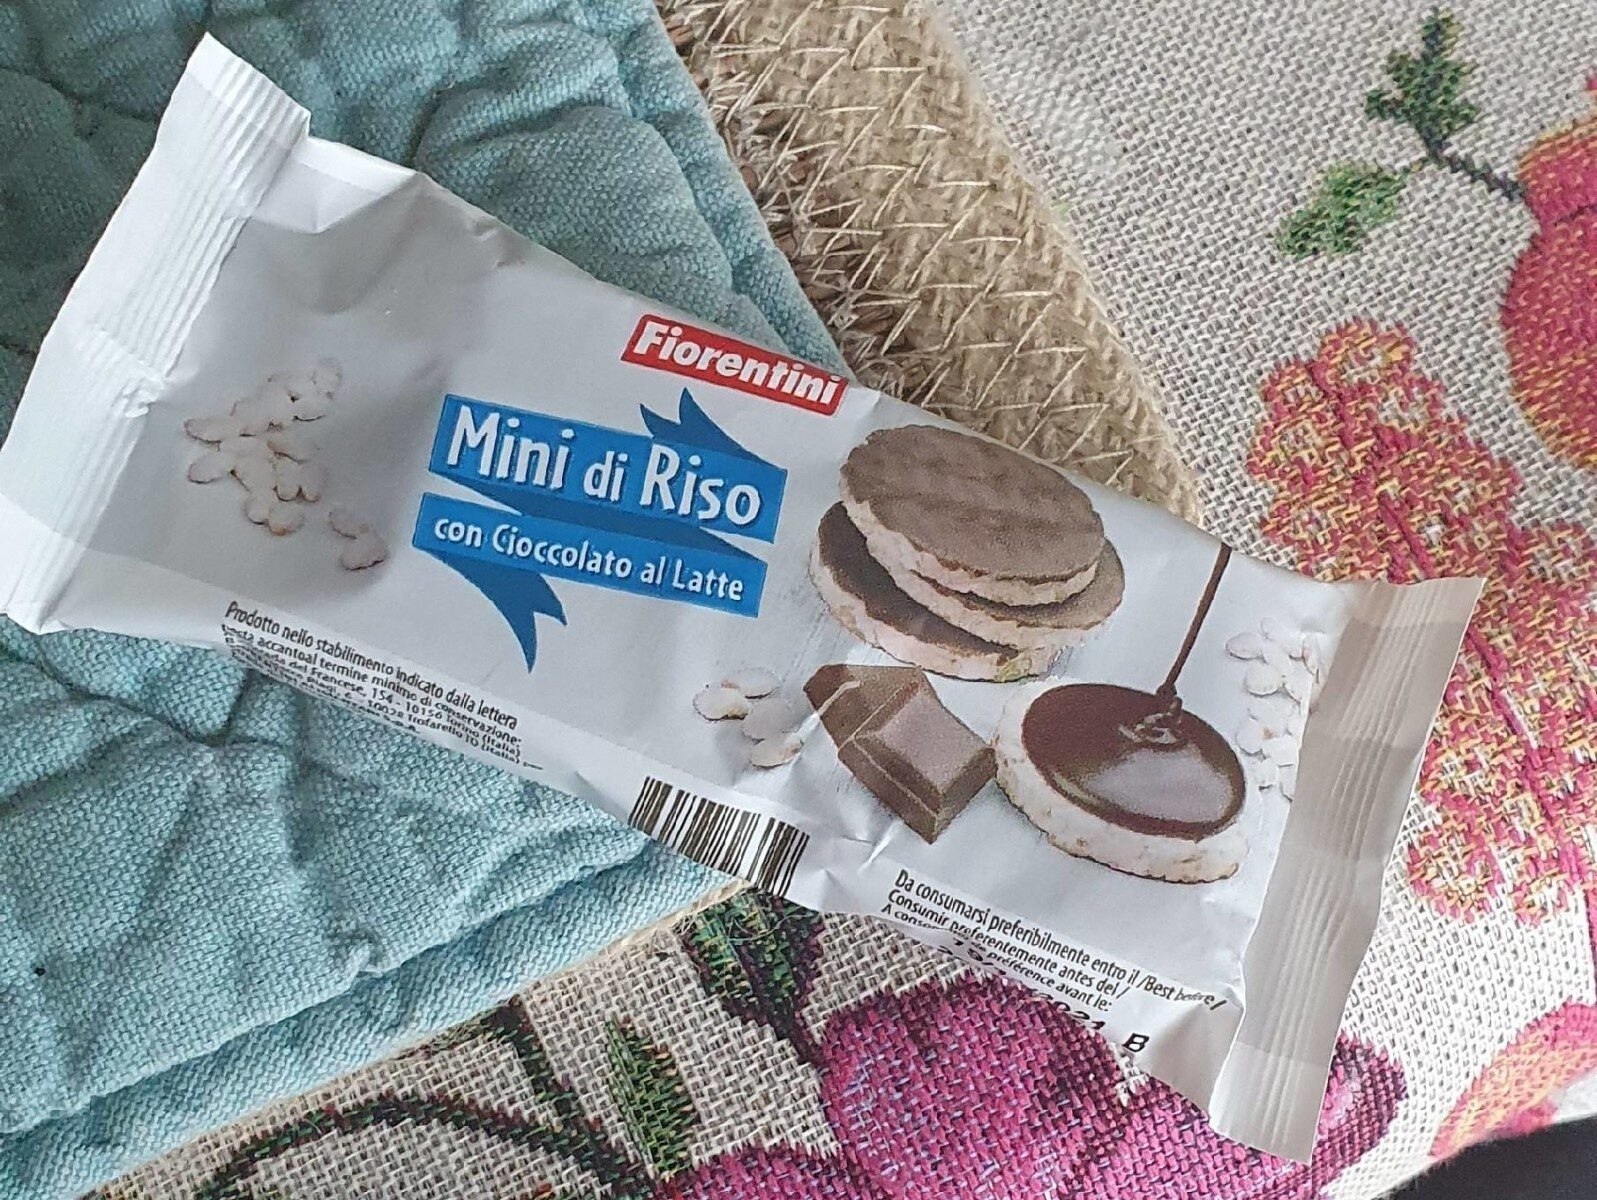 Mini di riso con cioccolato al latte - Product - fr